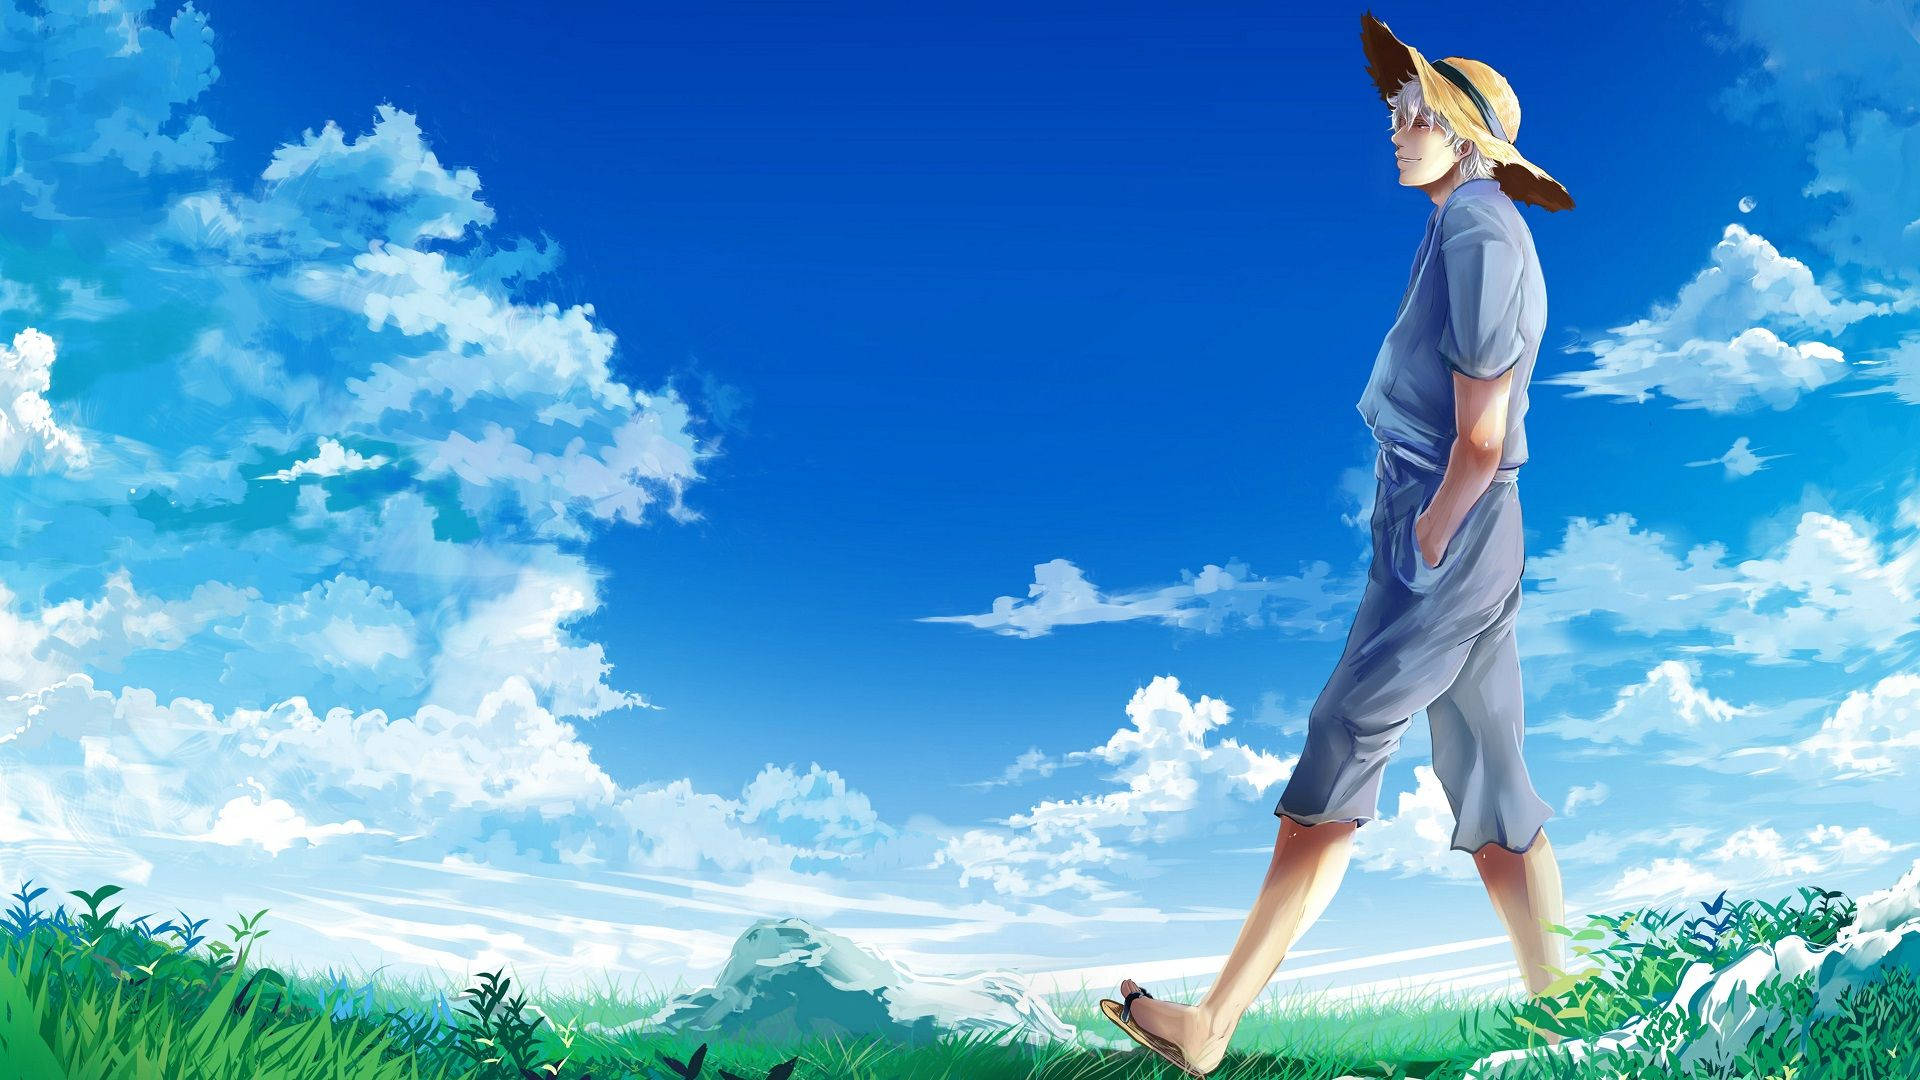 Gintama Gintoki Walking On Fields Wallpaper